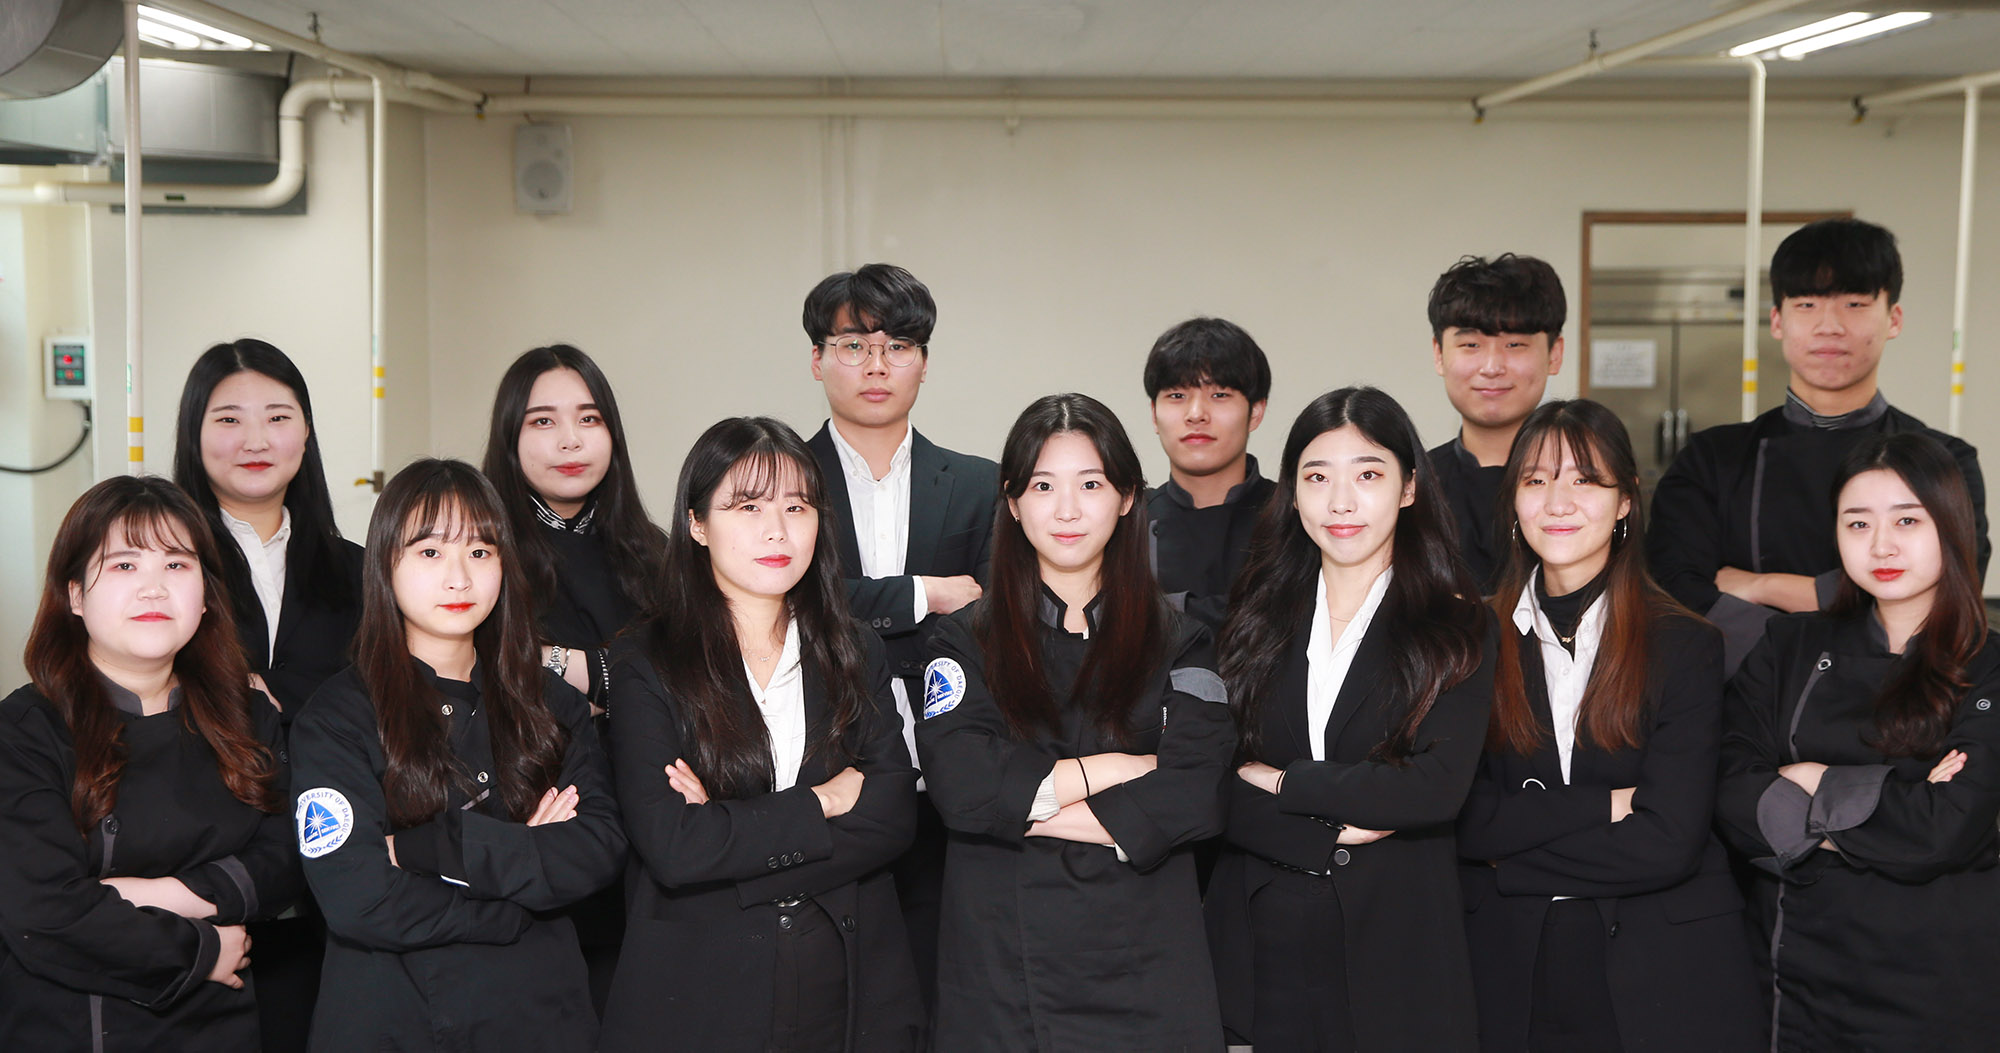 농림축산식품부장관상 및 한국농어촌공사장상을 받은 조리단체팀, 칵테일단체팀 학생들